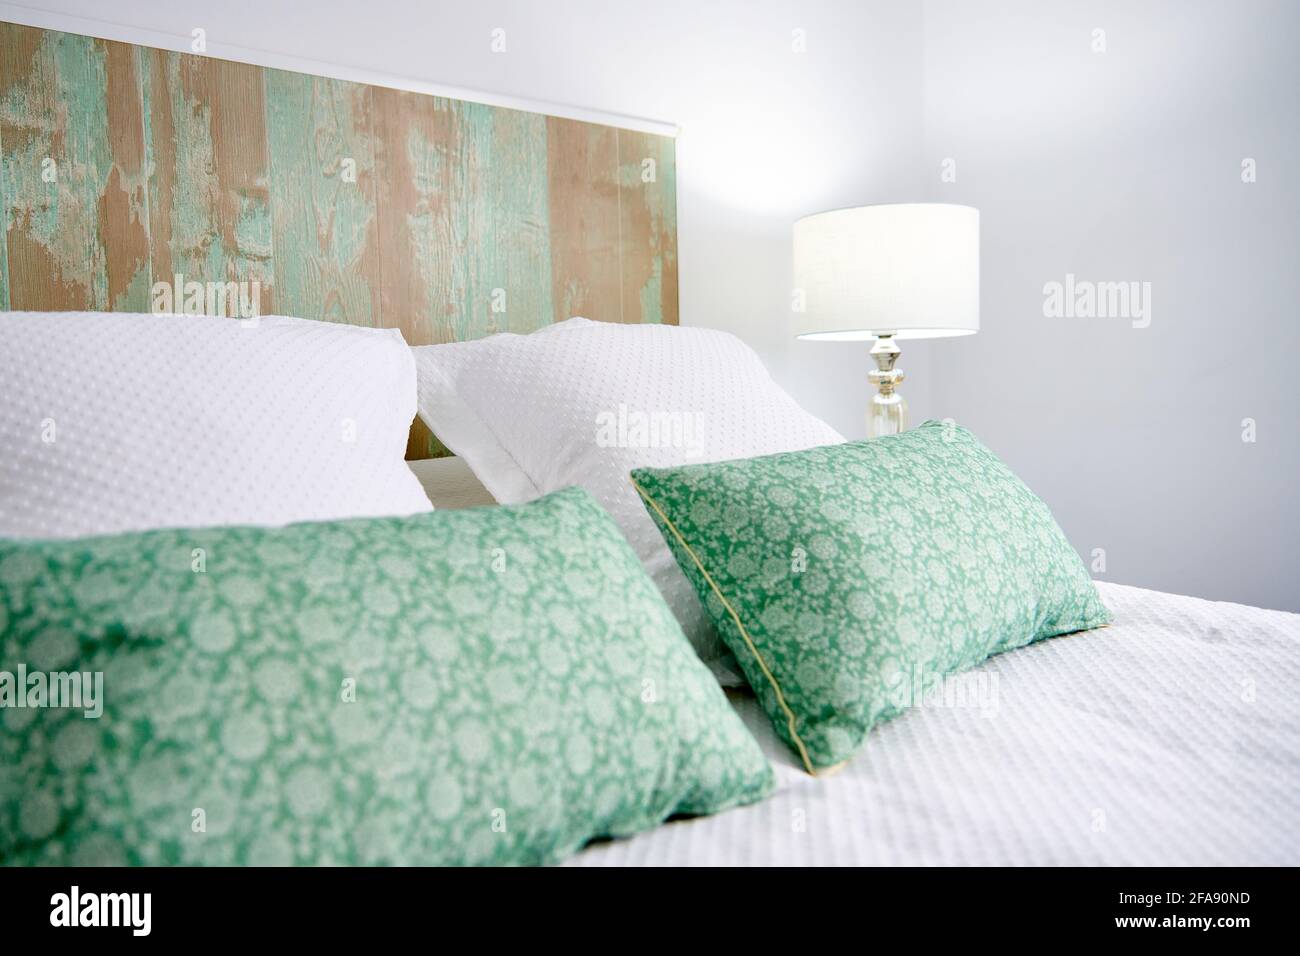 Vertikale Aufnahme von Kissen auf dem Bett in weiß Laterne Hintergrund  Stockfotografie - Alamy